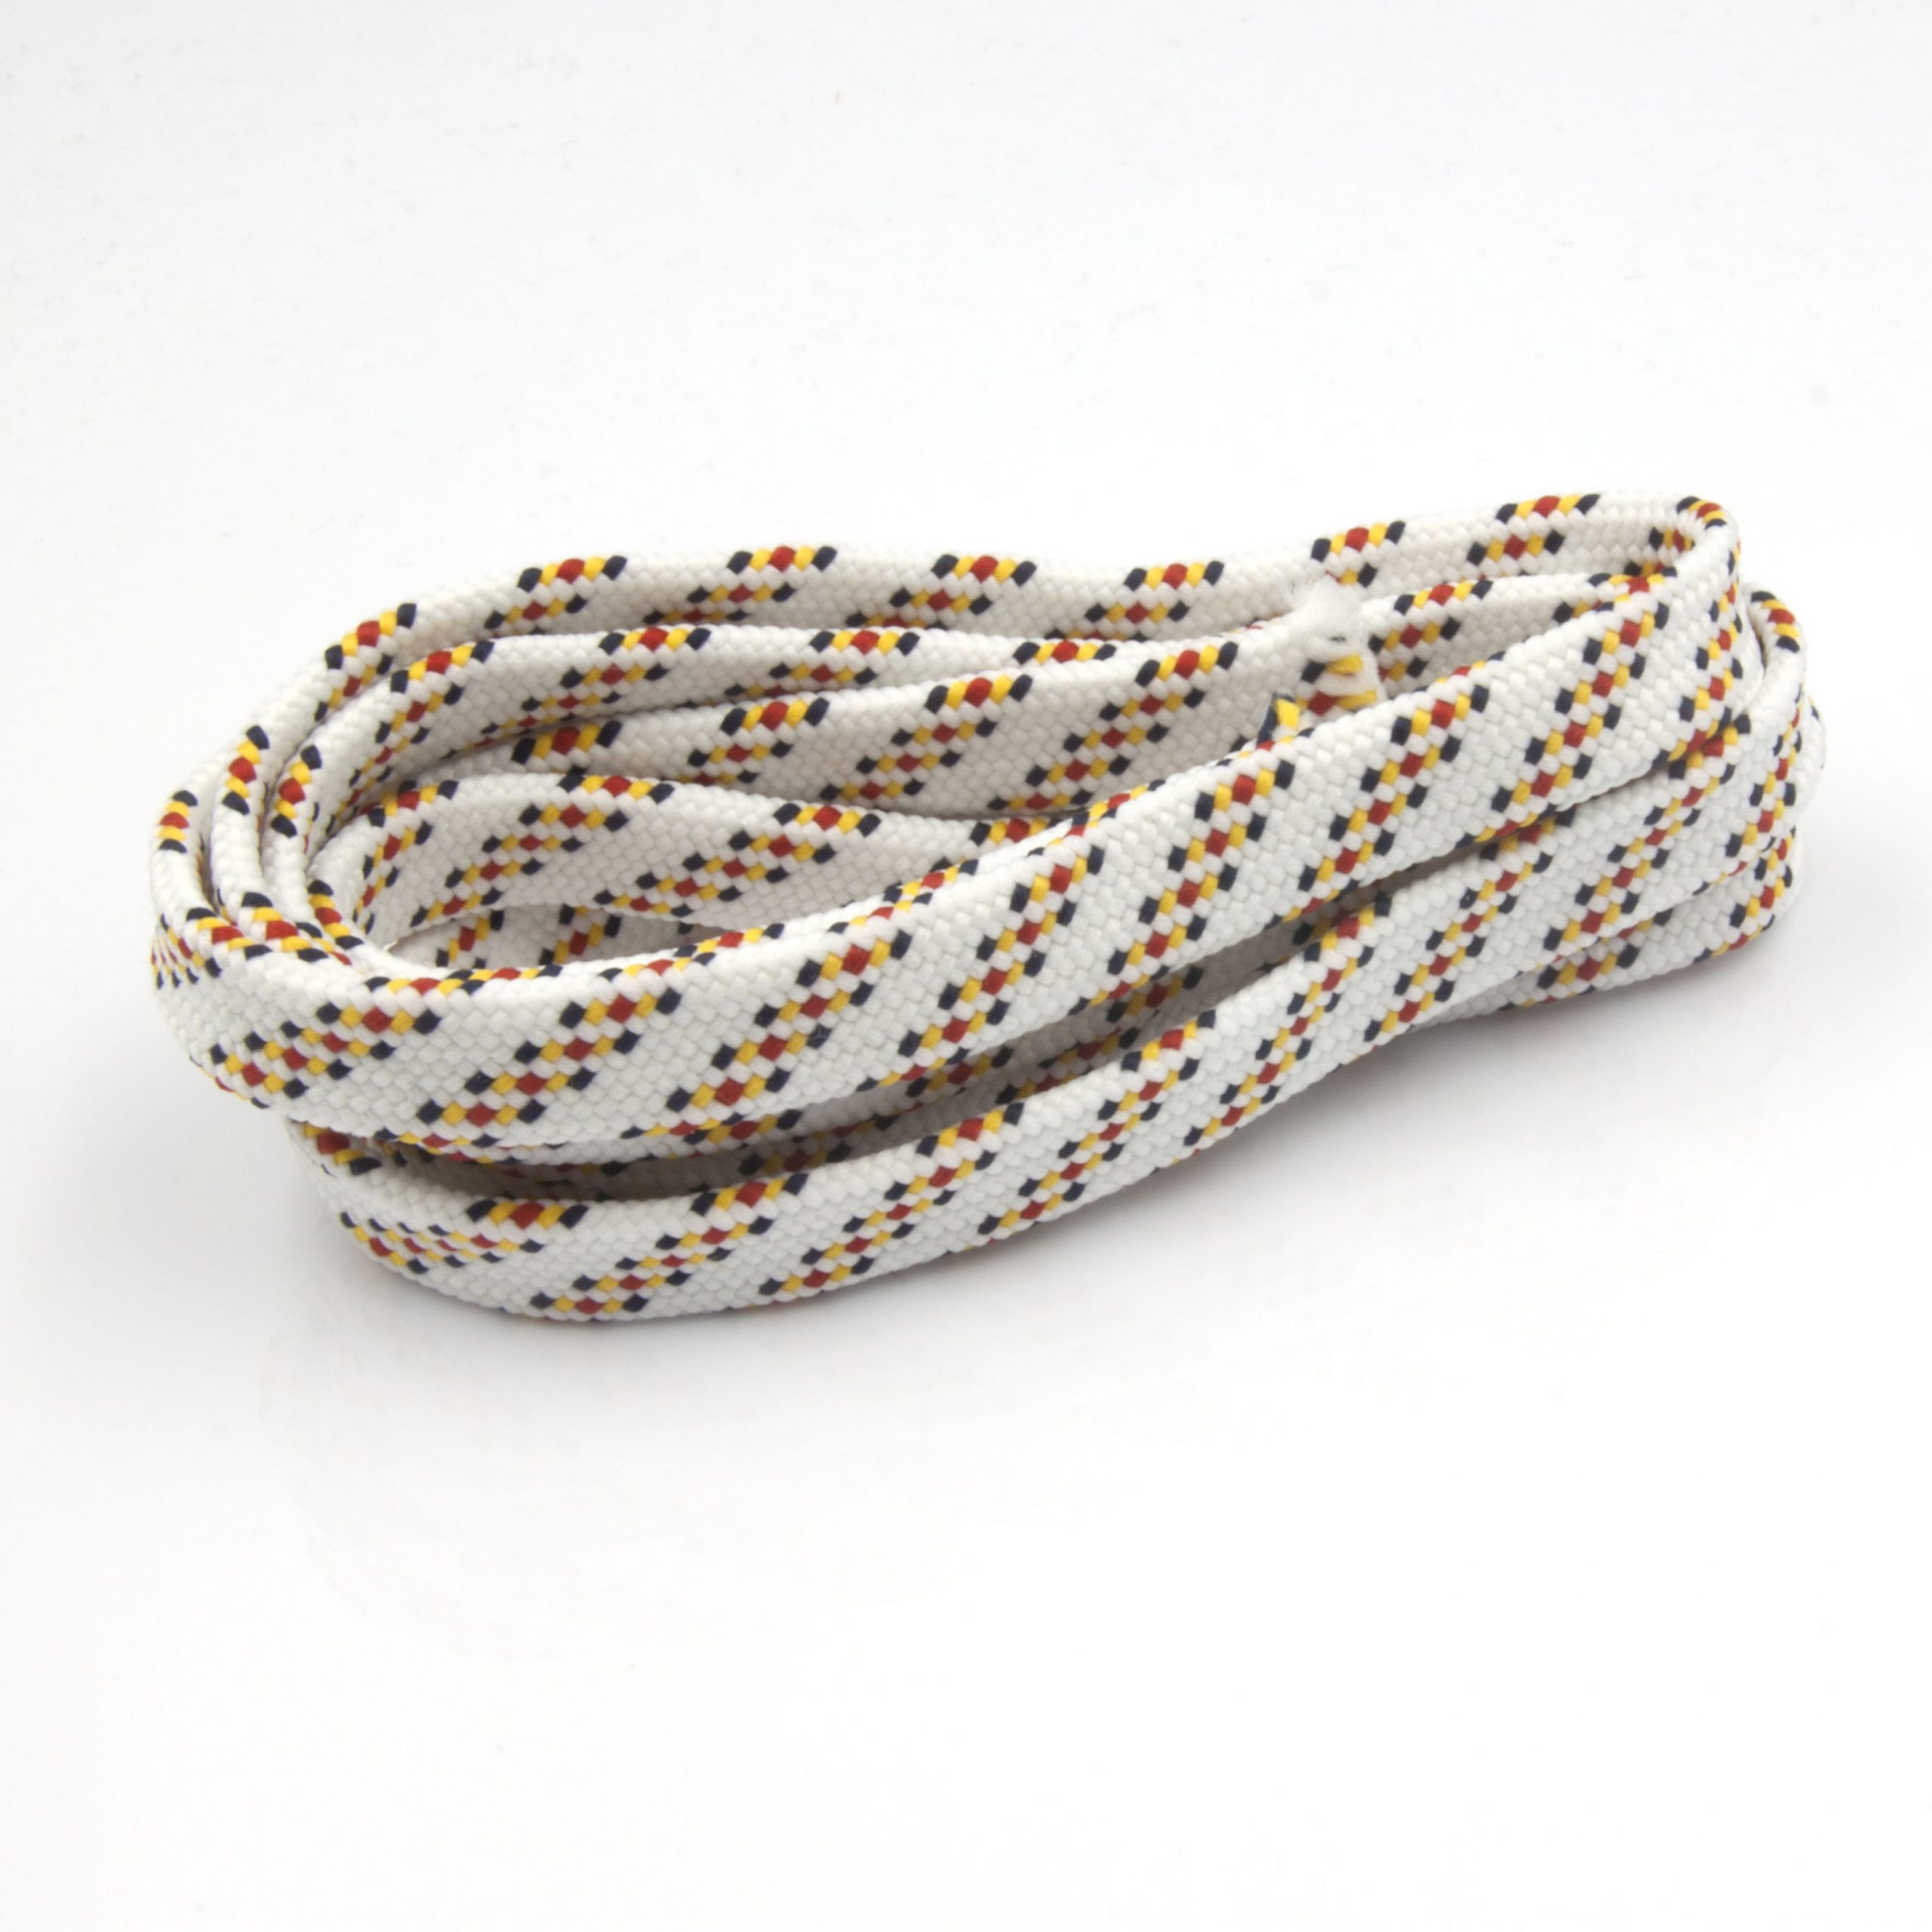 Płaski sznurek pleciony wielokolorowy stosowany jako sznurek do odzieży i odzieży sportowej.